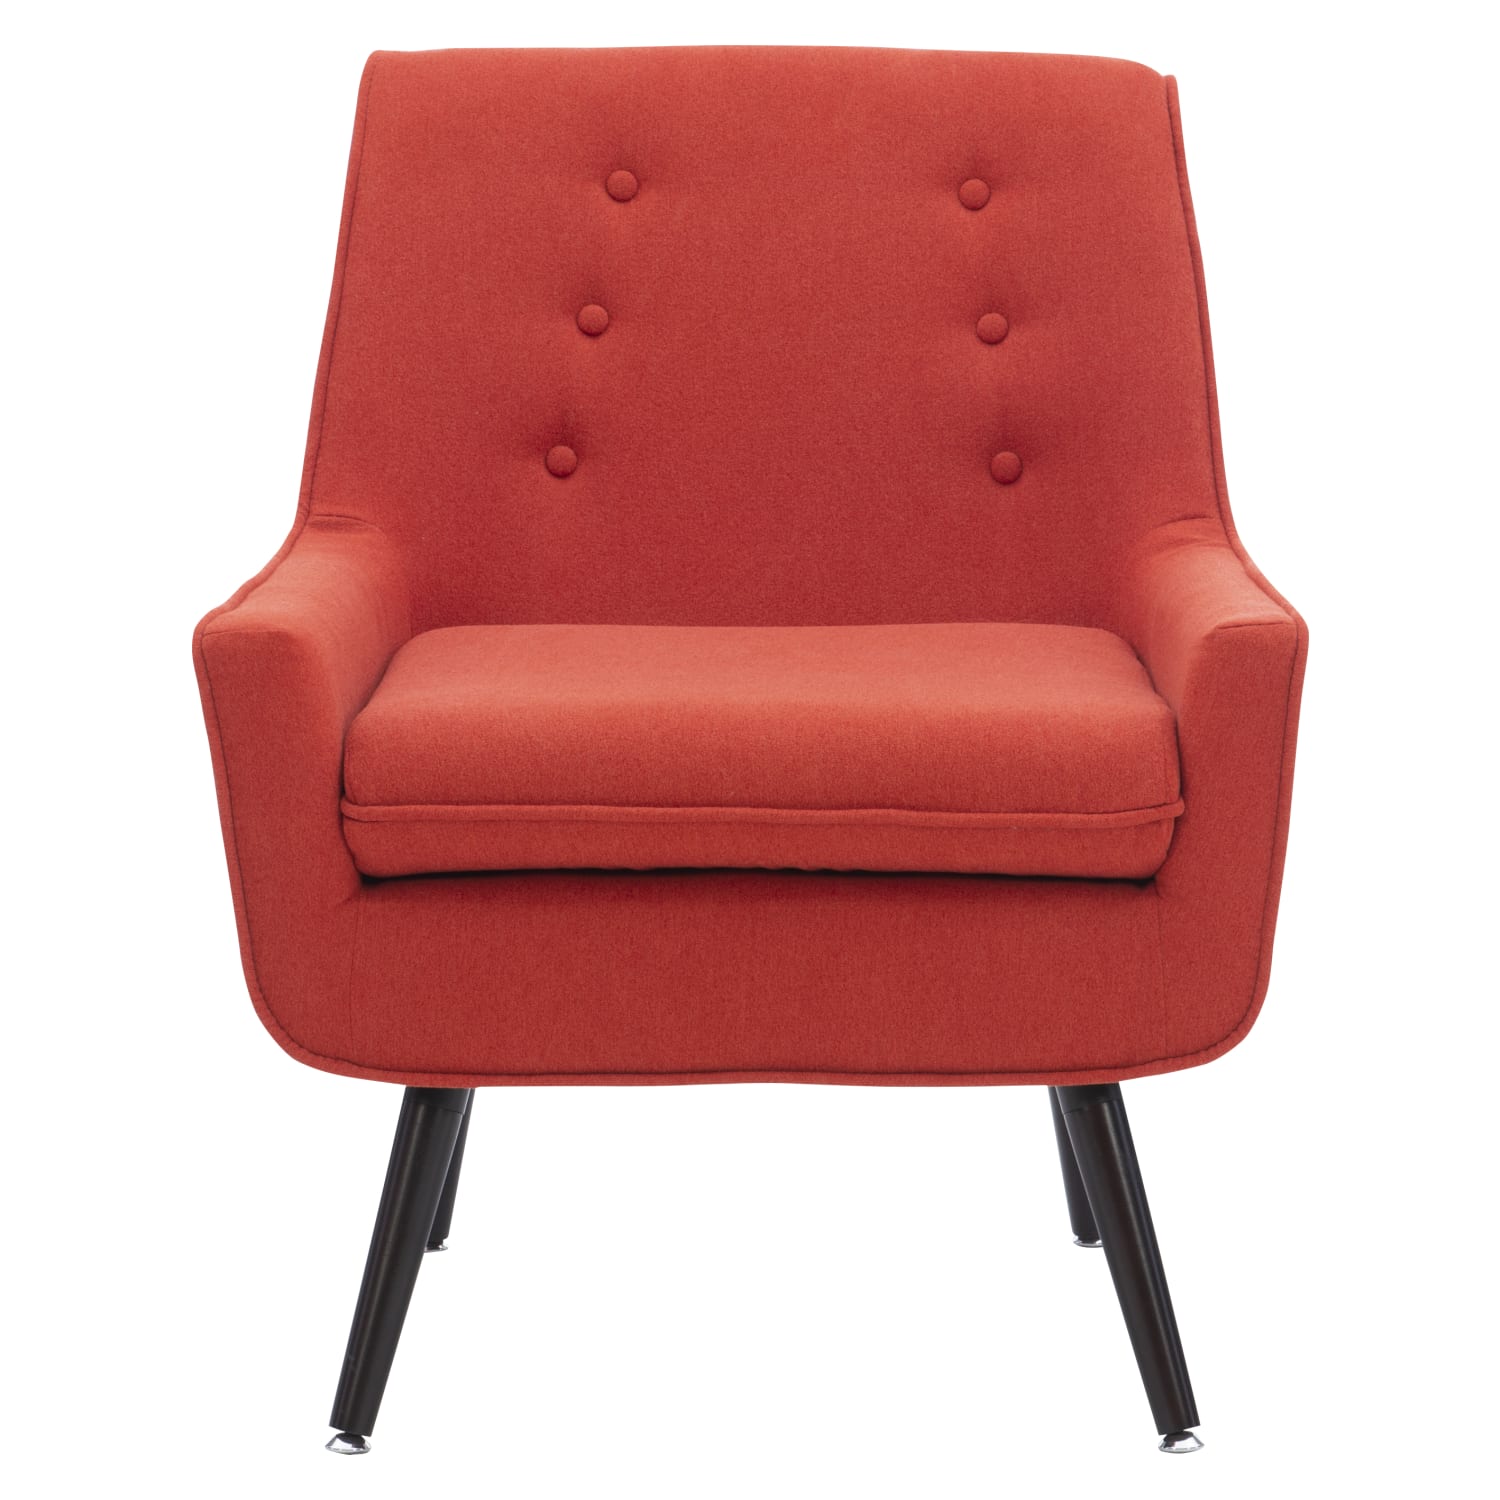 Killala Pimento Red Trellis Chair